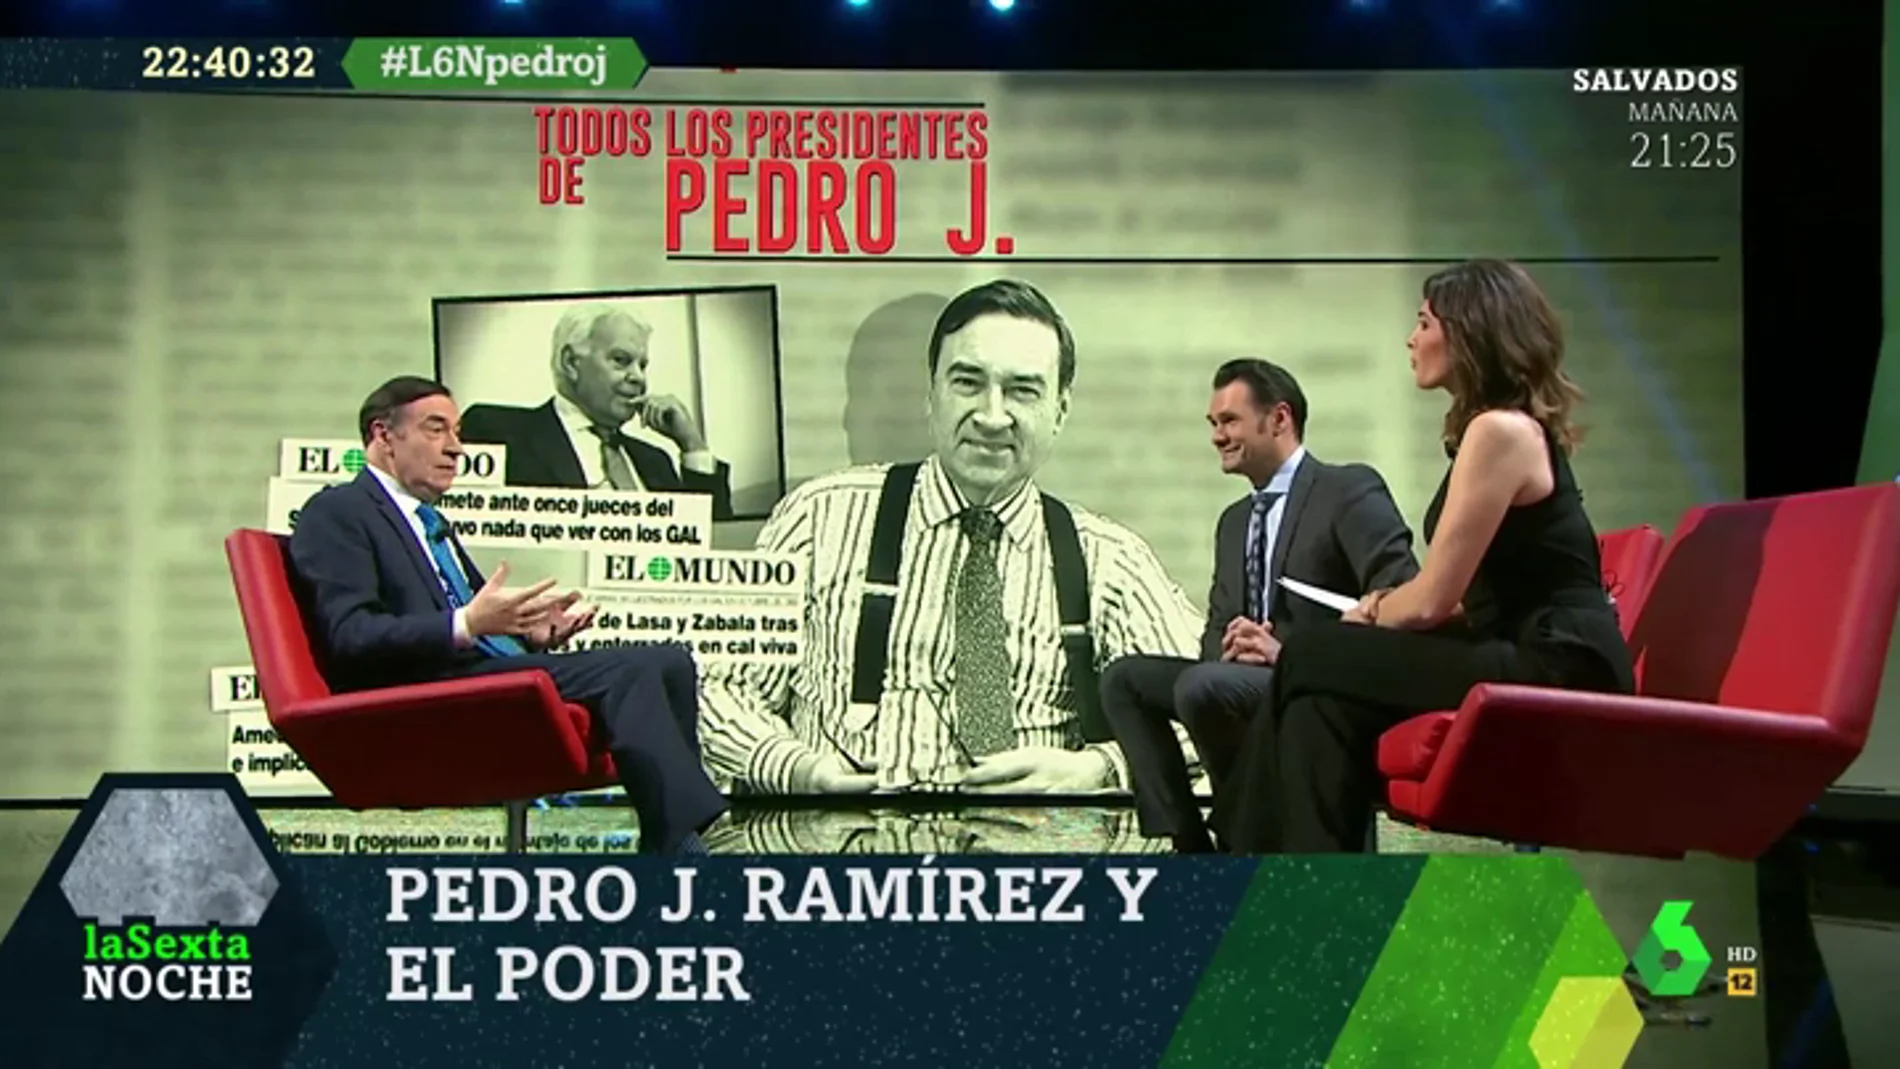 La relación de Pedro J. Ramírez con Felipe González: "Creó una trama de terrorismo de Estado, es inmoral"